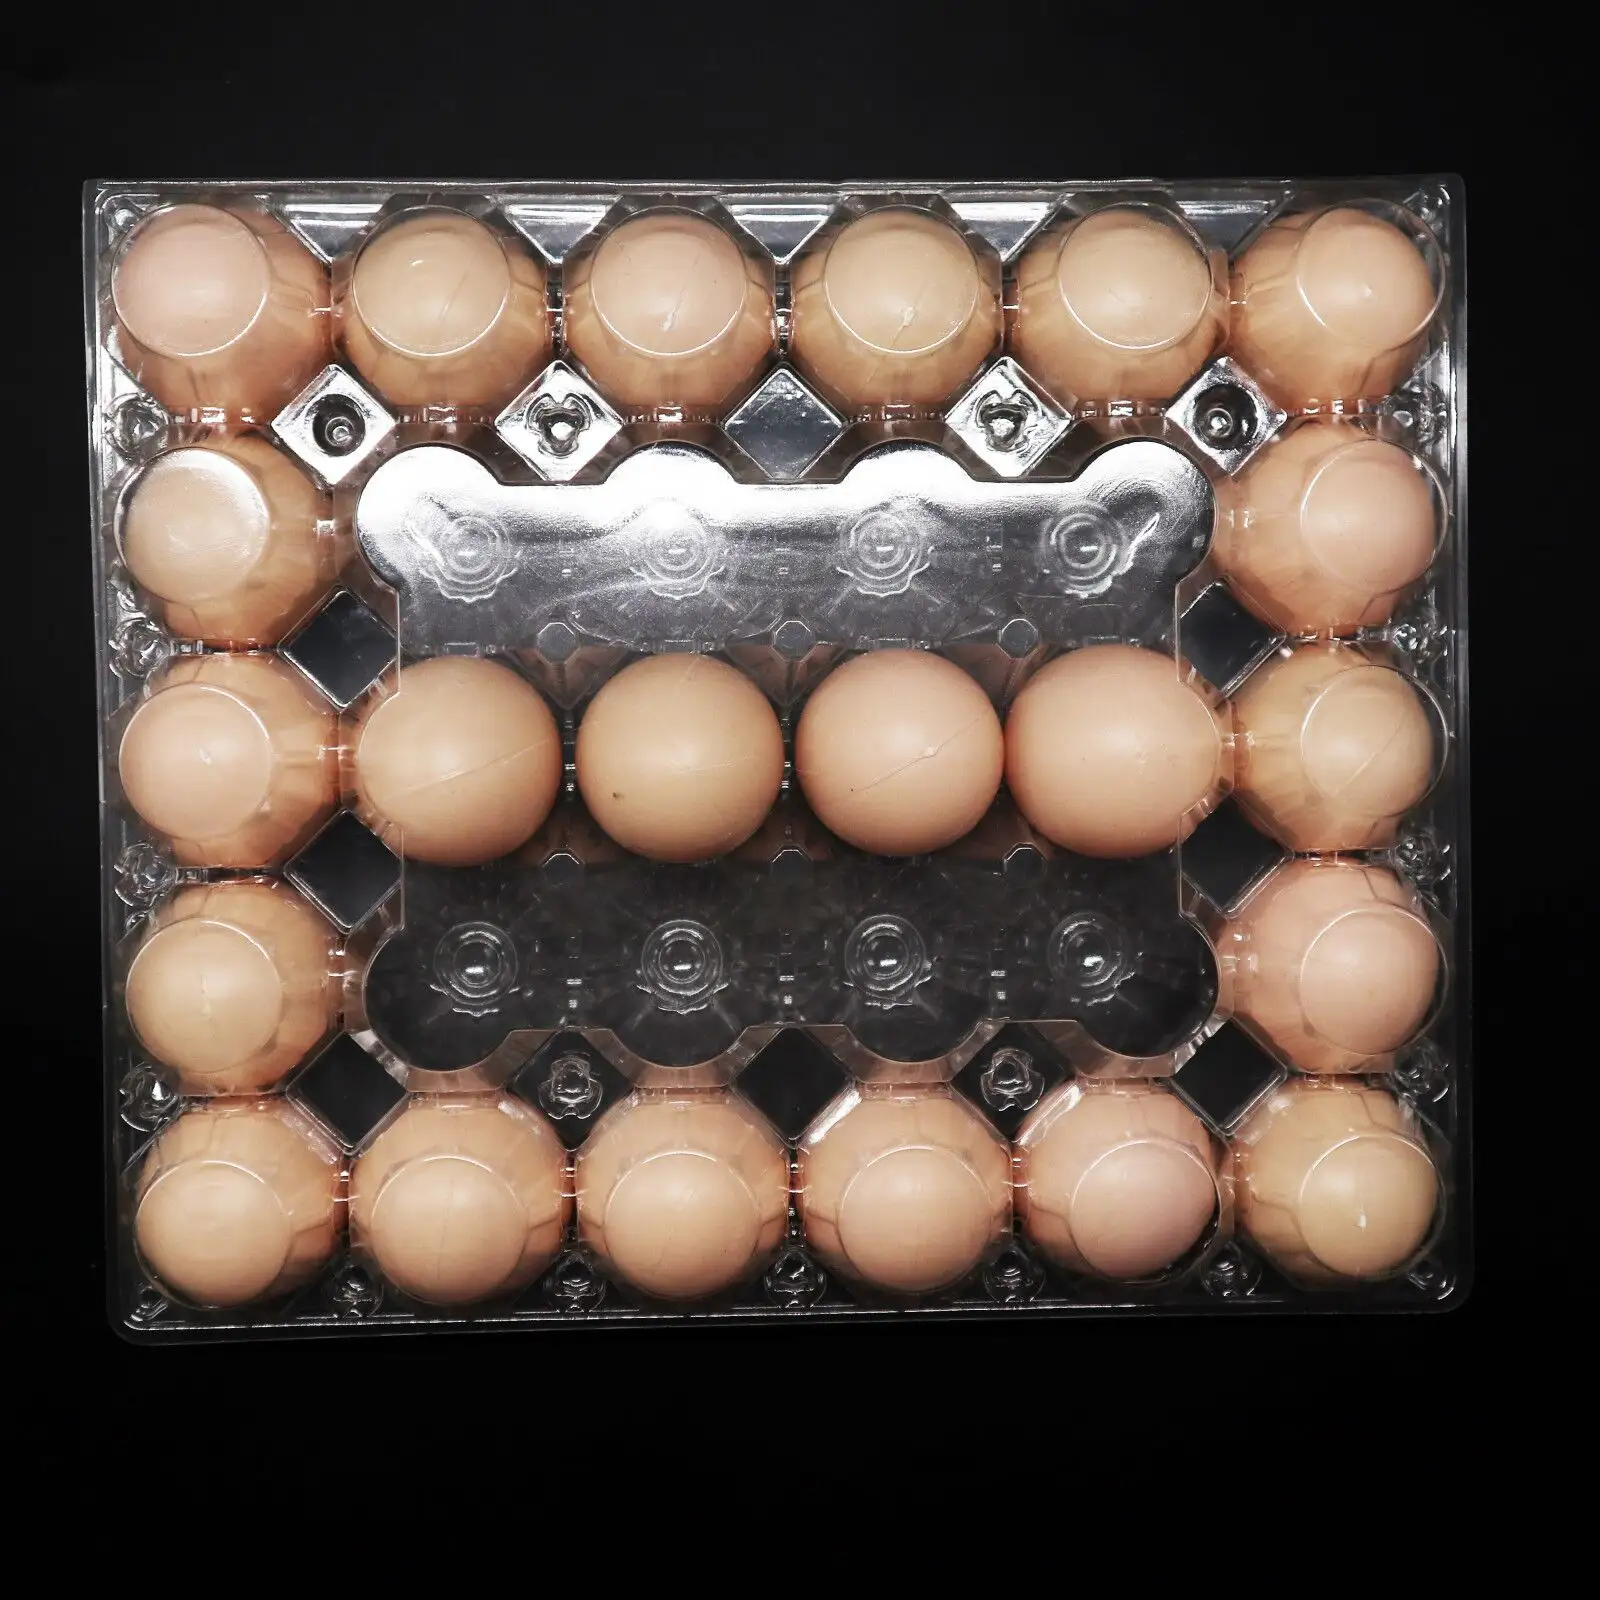 Bandeja de ovos de plástico transparente para agricultor, caixa de ovos descartável transparente com 4 6 8 9 10 12 15 16 20 30 furos